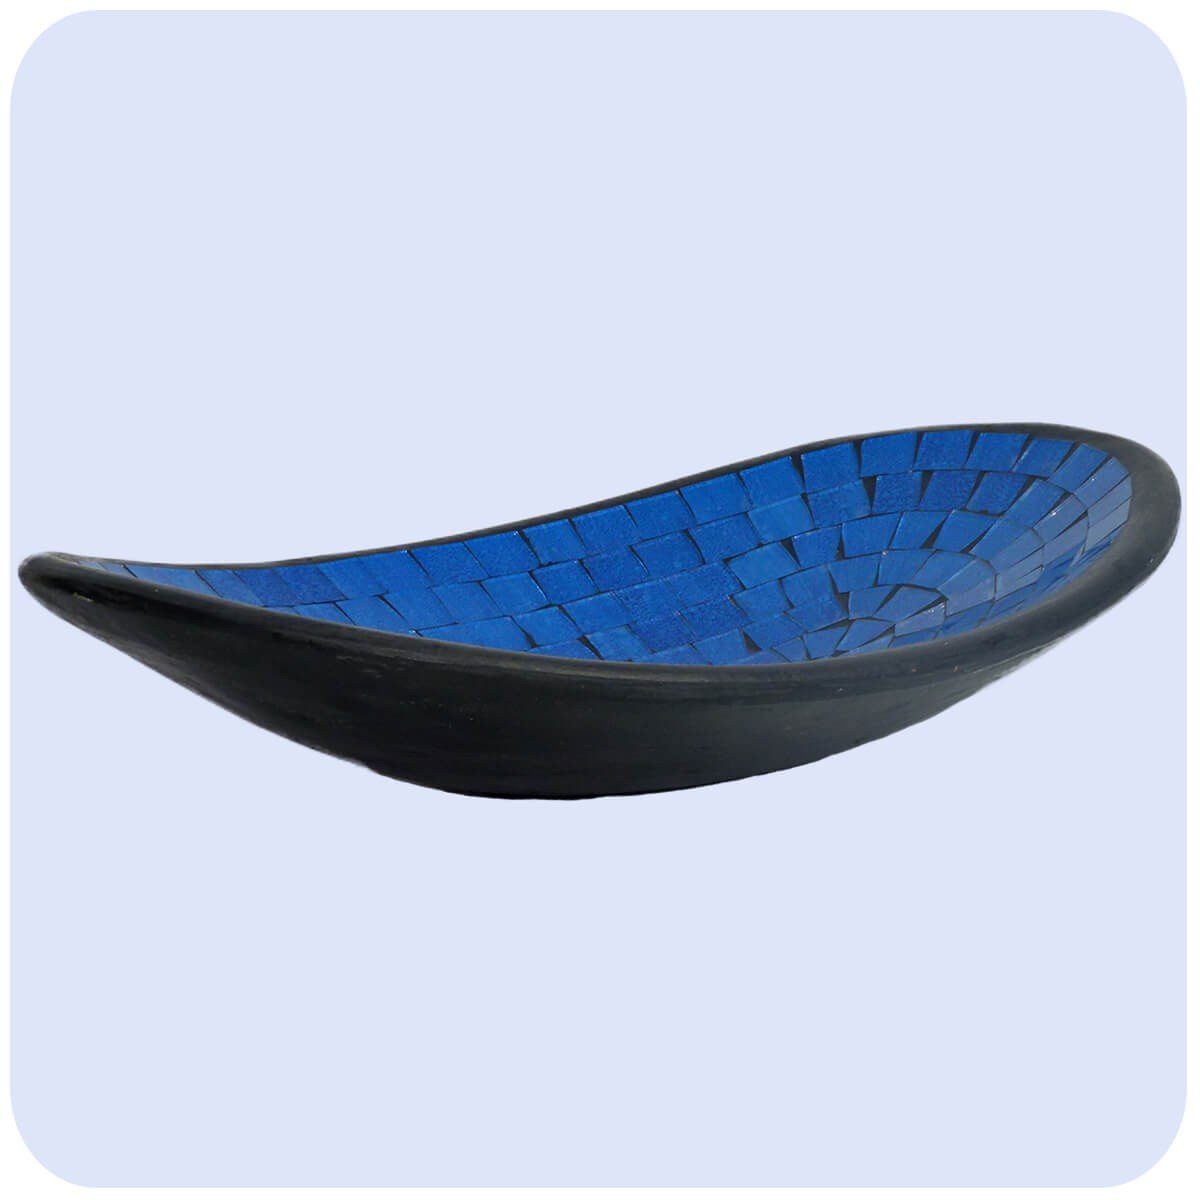 SIMANDRA Dekoschale Glas-Mosaikschale Tonschale oval Blau XL